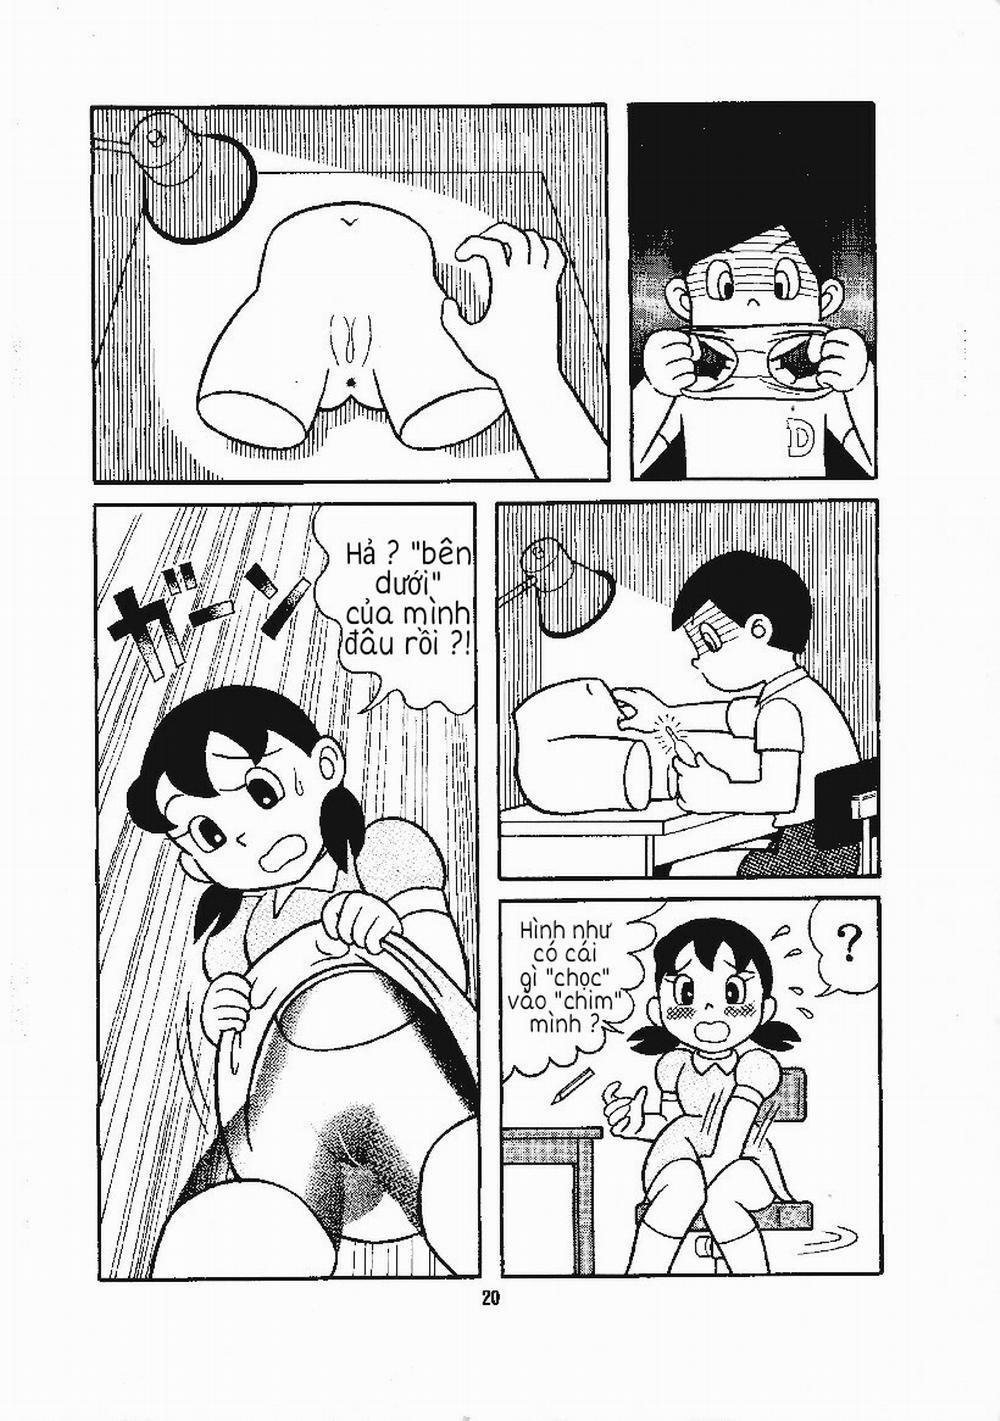 Tuyển Tập Doraemon Doujinshi 18+ Chương 15 B n d i c a Xuka Trang 4